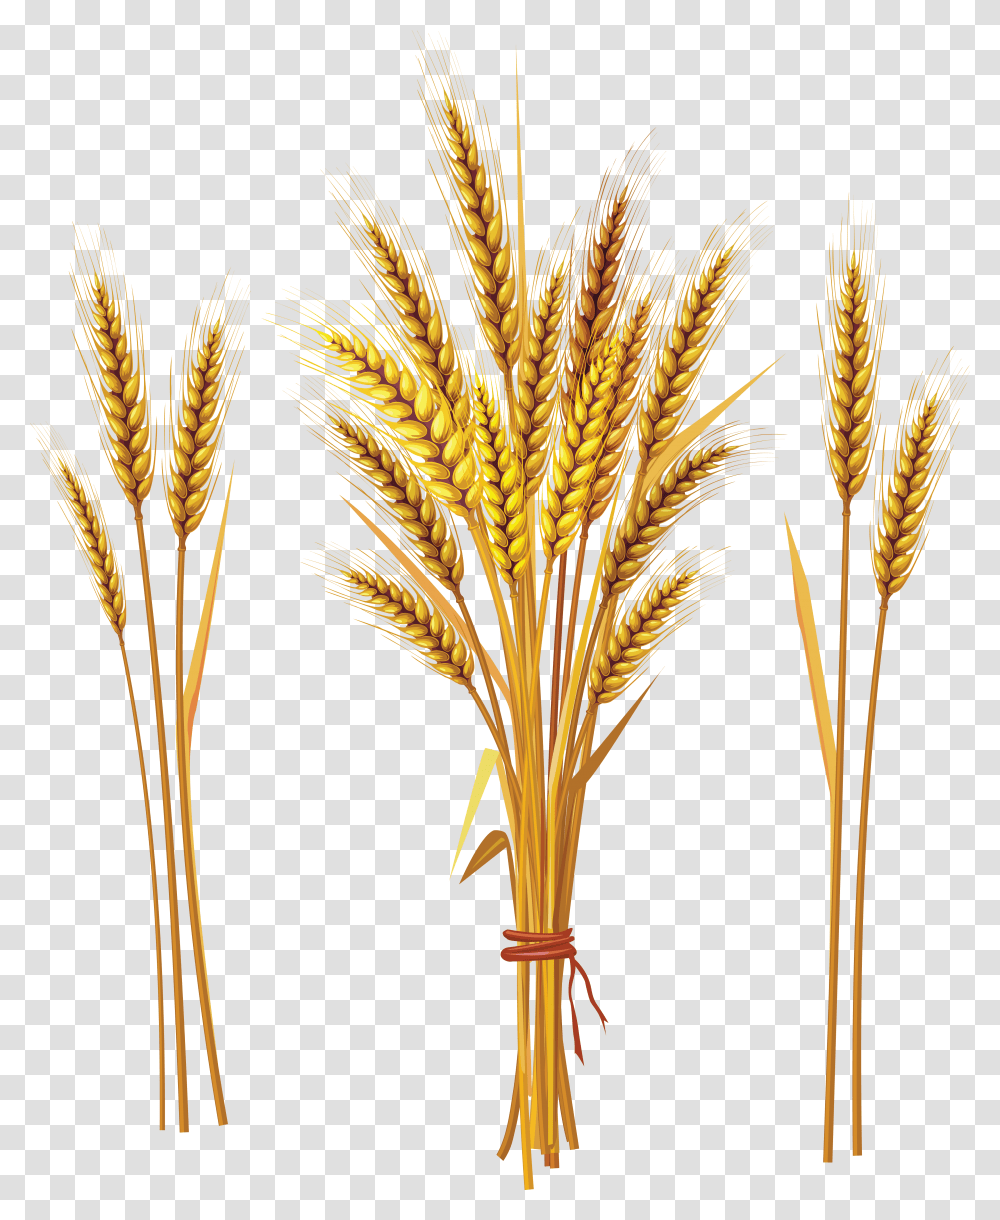 Wheat, Nature, Plant, Construction Crane, Vegetable Transparent Png